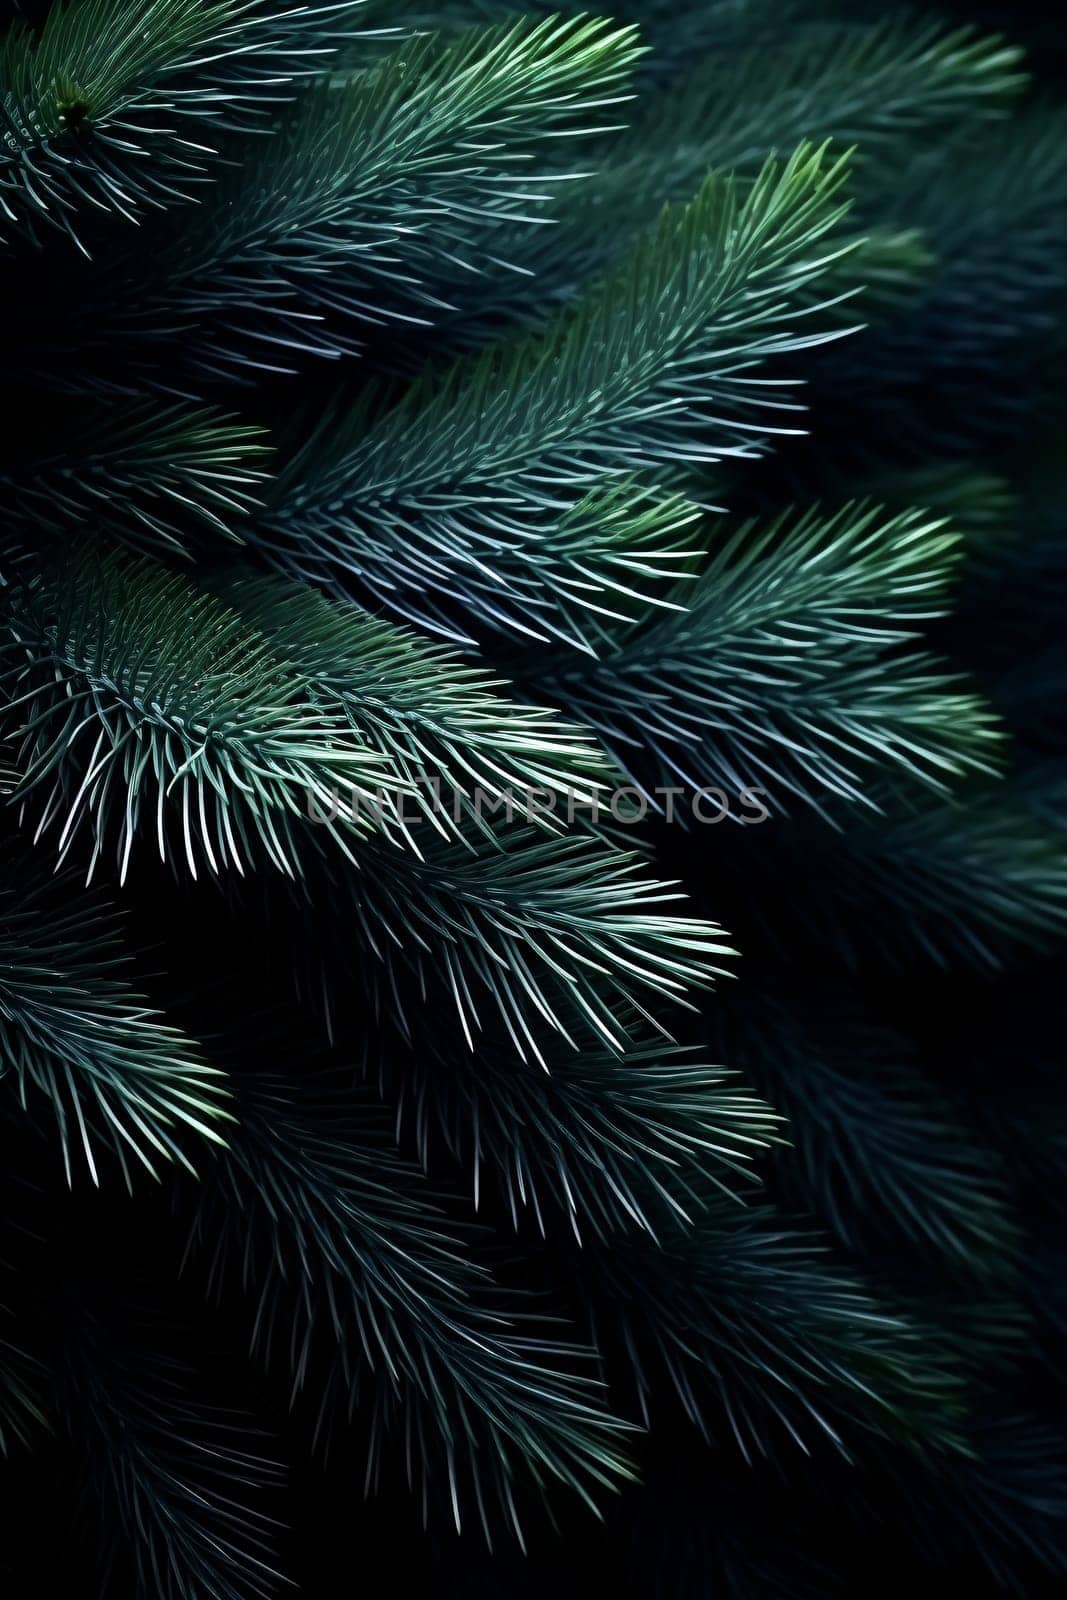 Deep Green Pine Foliage in Shadows by chrisroll